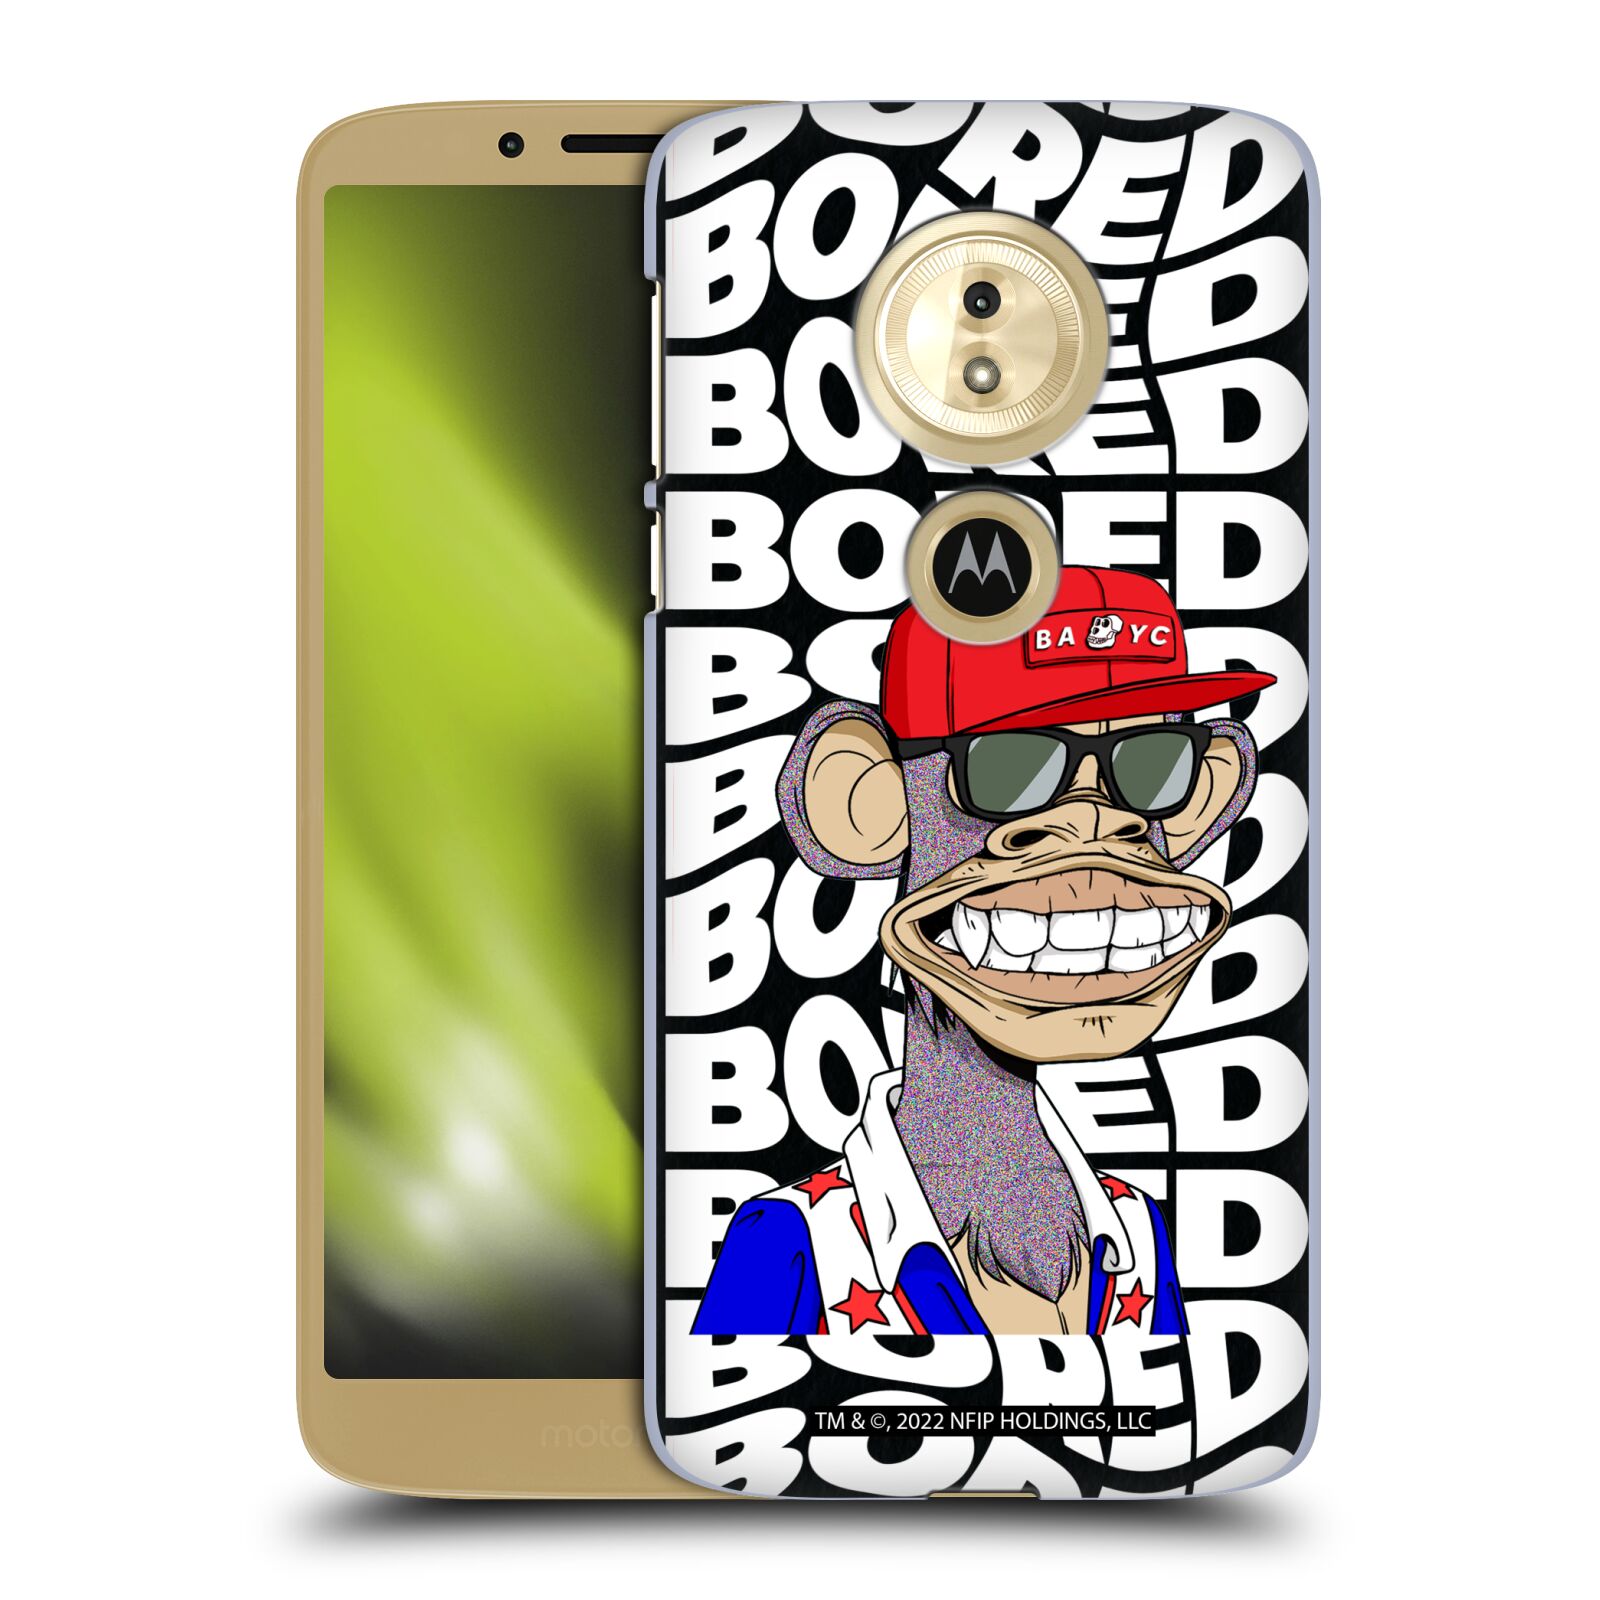 Pouzdro na mobil Motorola Moto E5 - HEAD CASE - Bored of Directors - Ape 6152